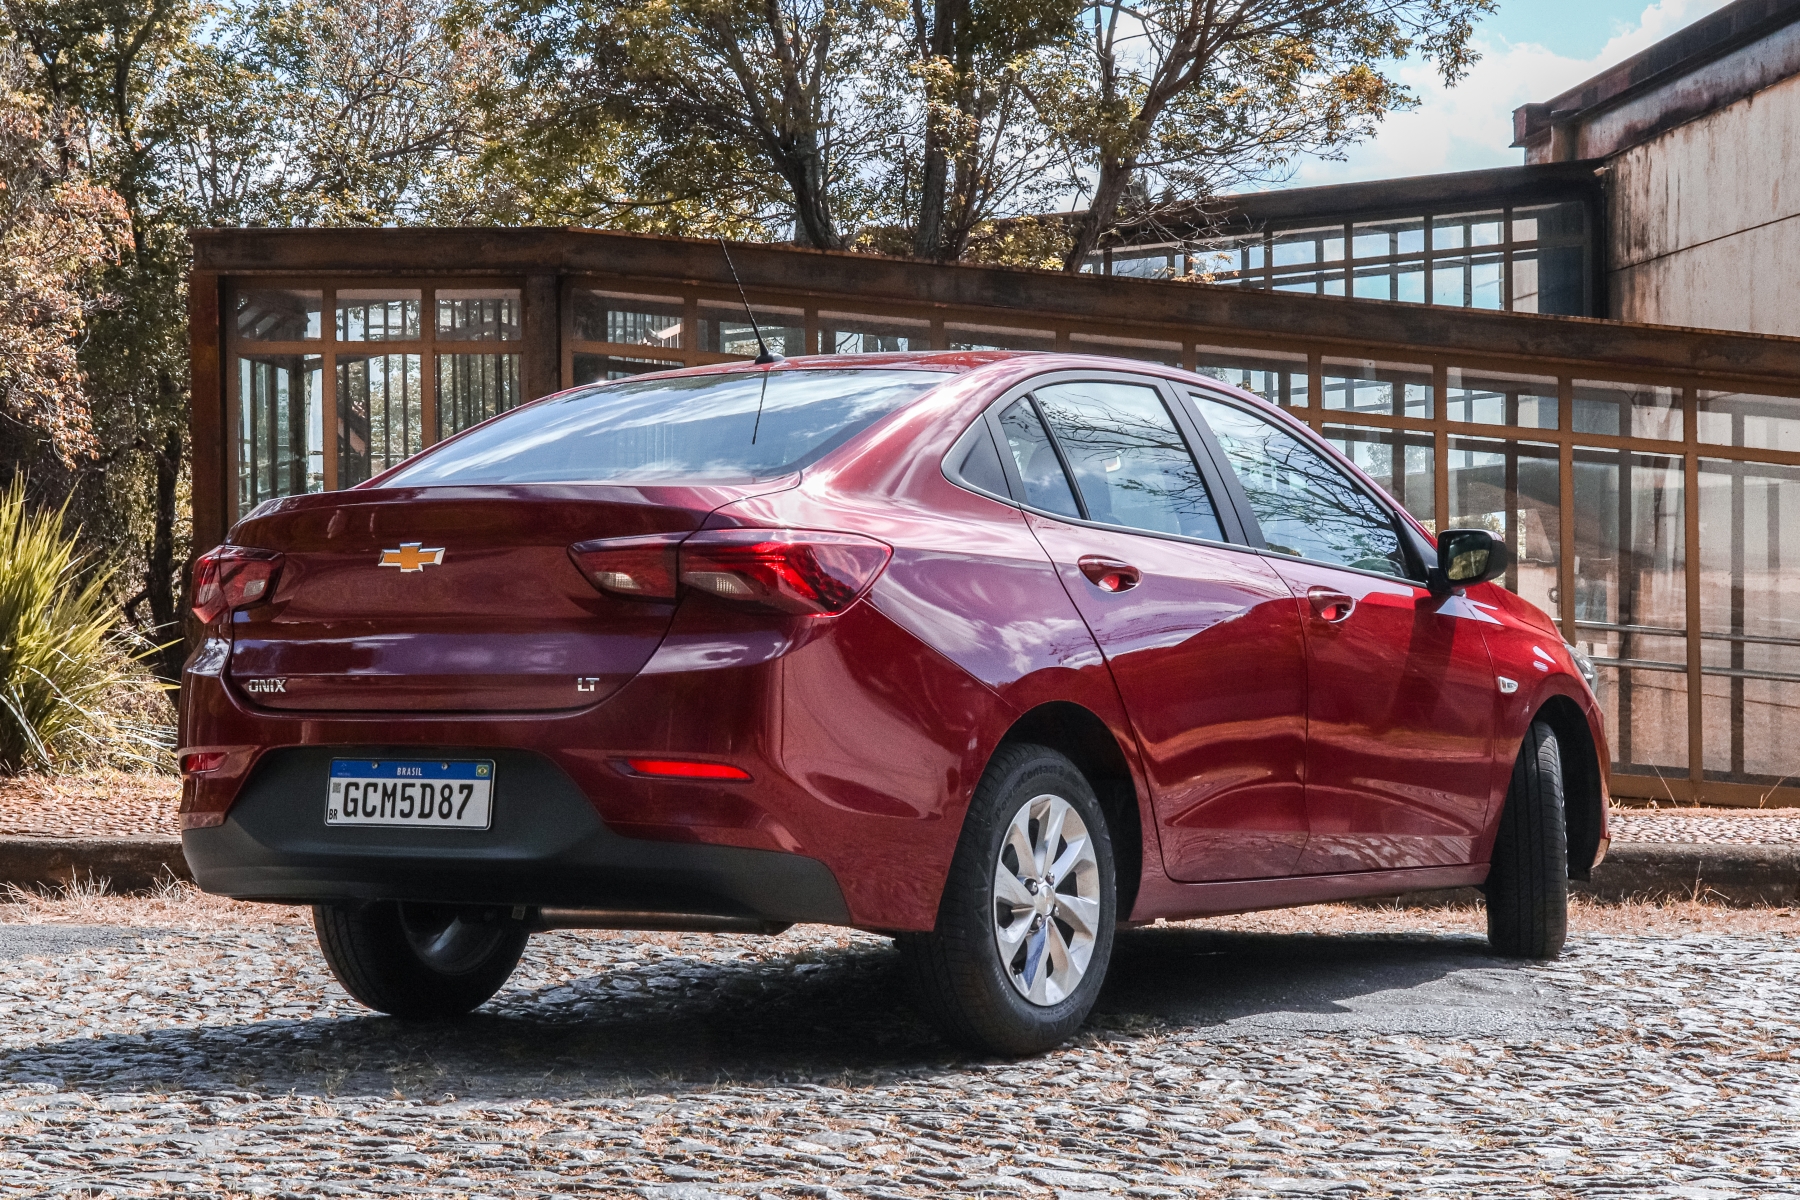 Teste: Chevrolet Onix 2019 é boa opção entre compactos, mas